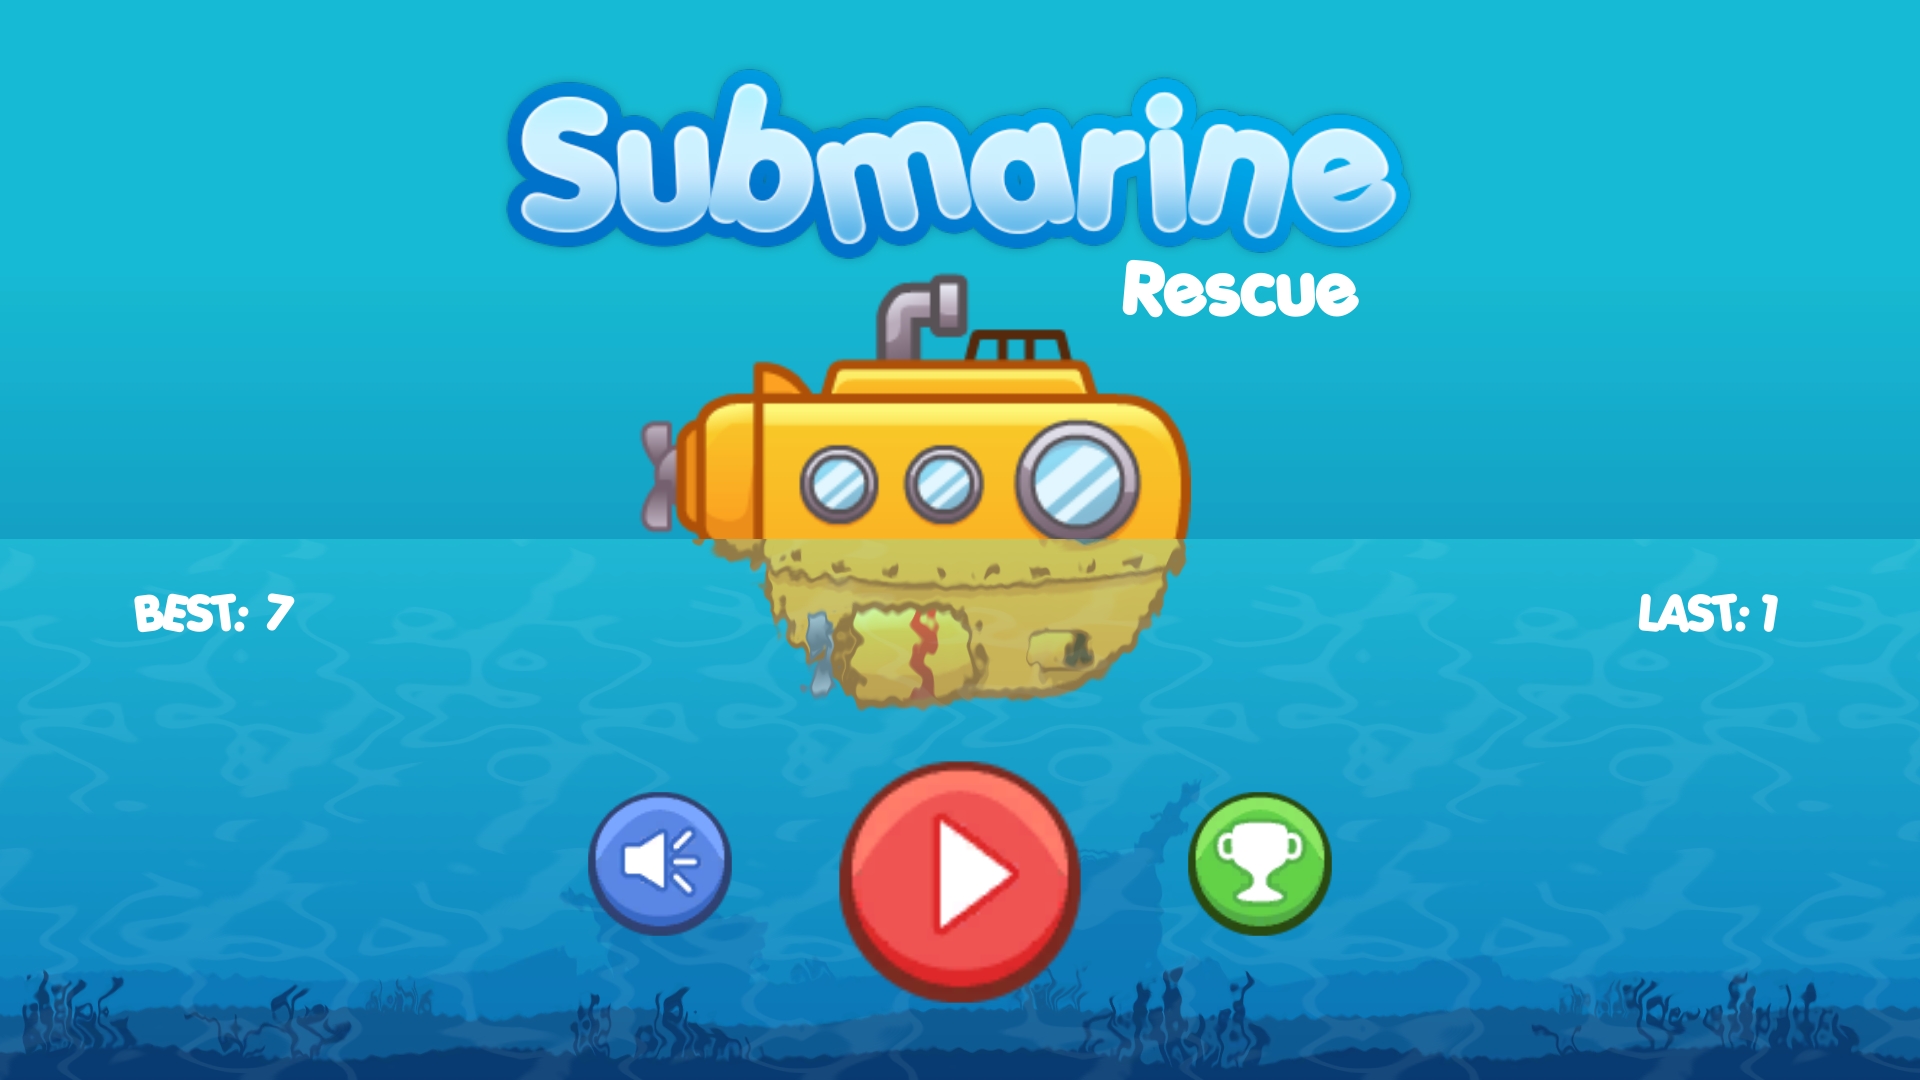 Submarine Rescue by dcmestanza